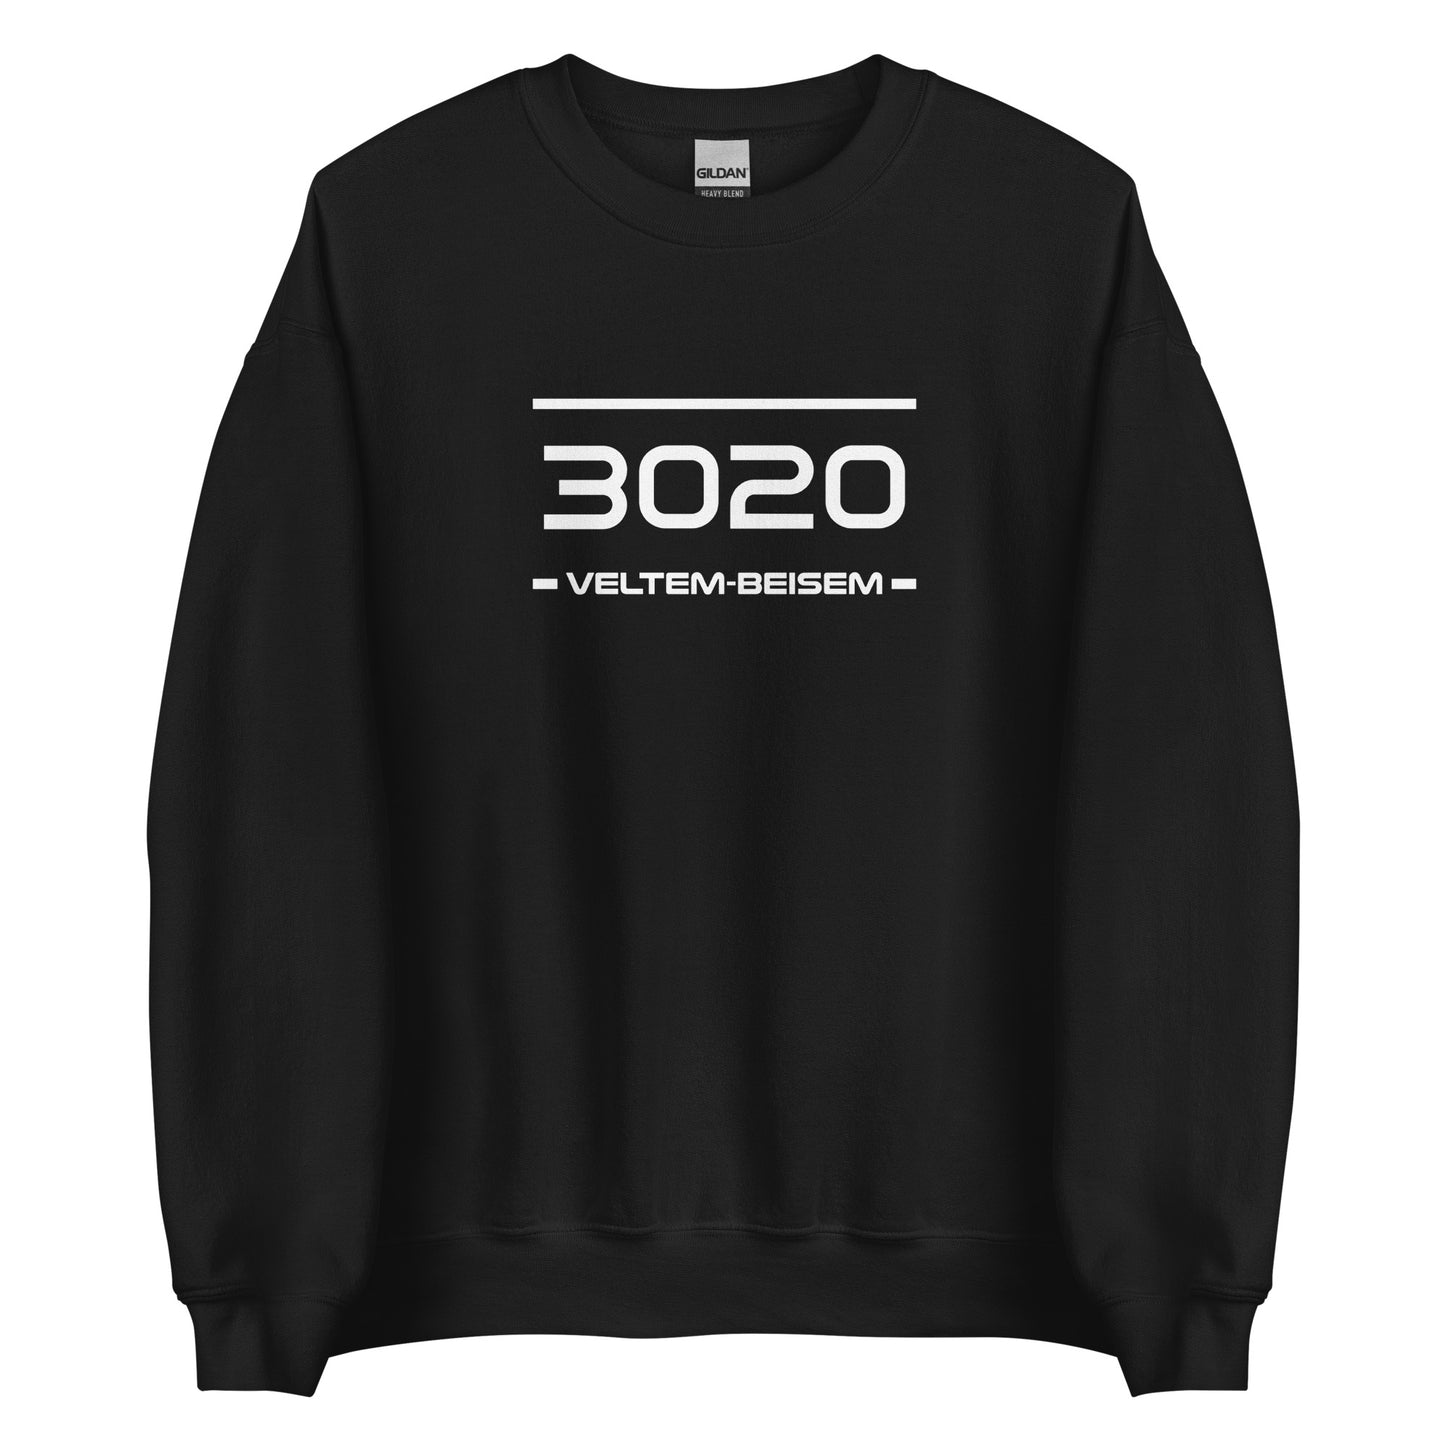 Sweater - 3020 - Veltem-Beisem (M/V)